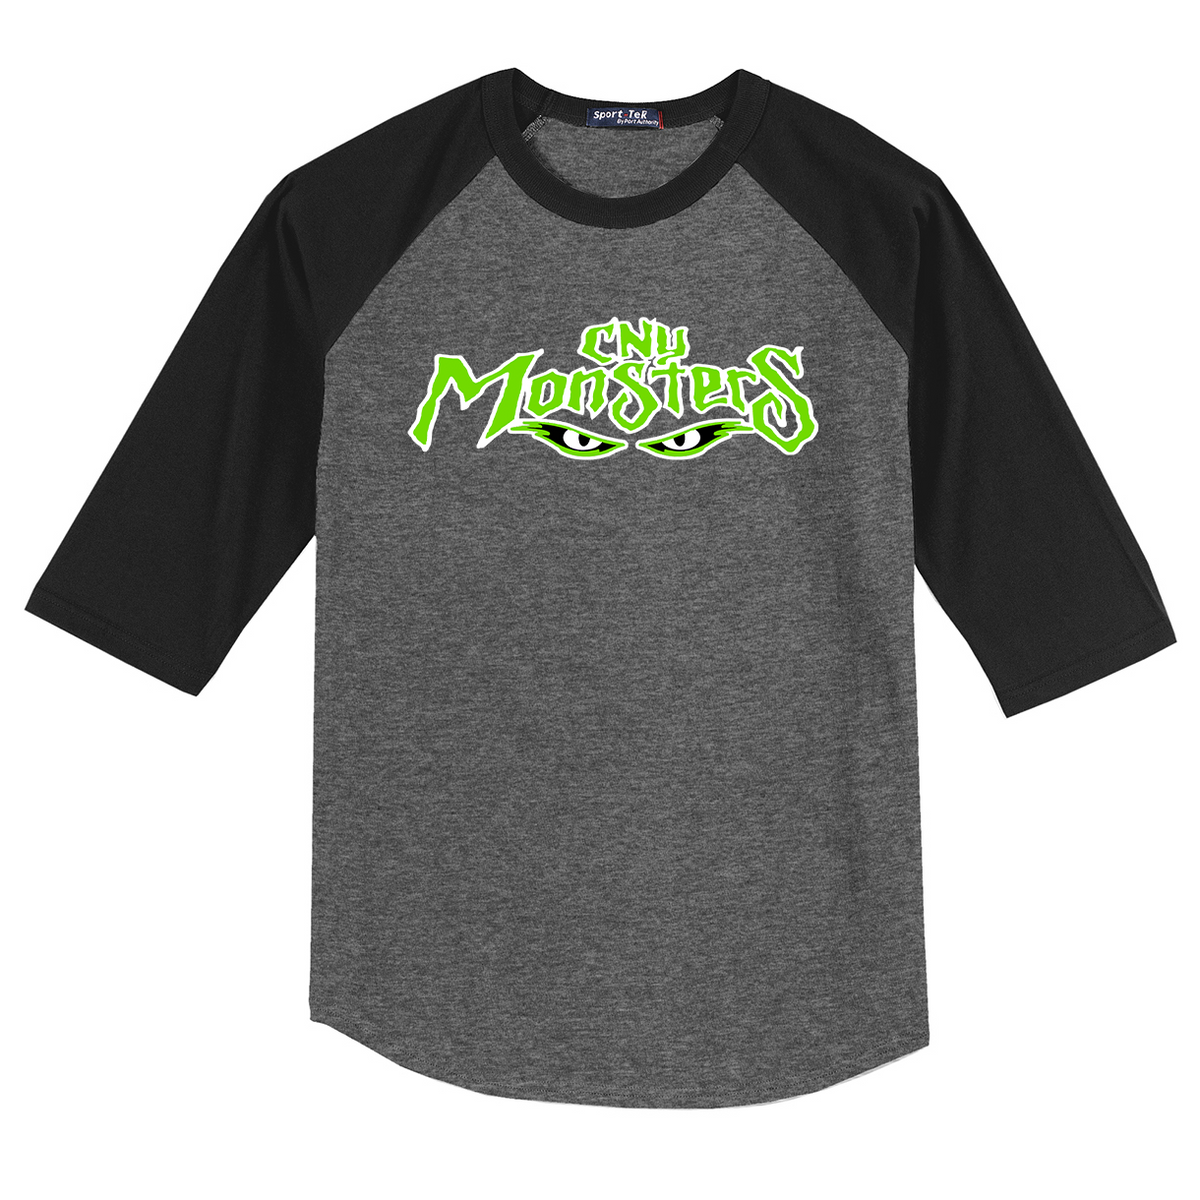 CNY Monsters Softball 3/4 Sleeve Baseball Shirt